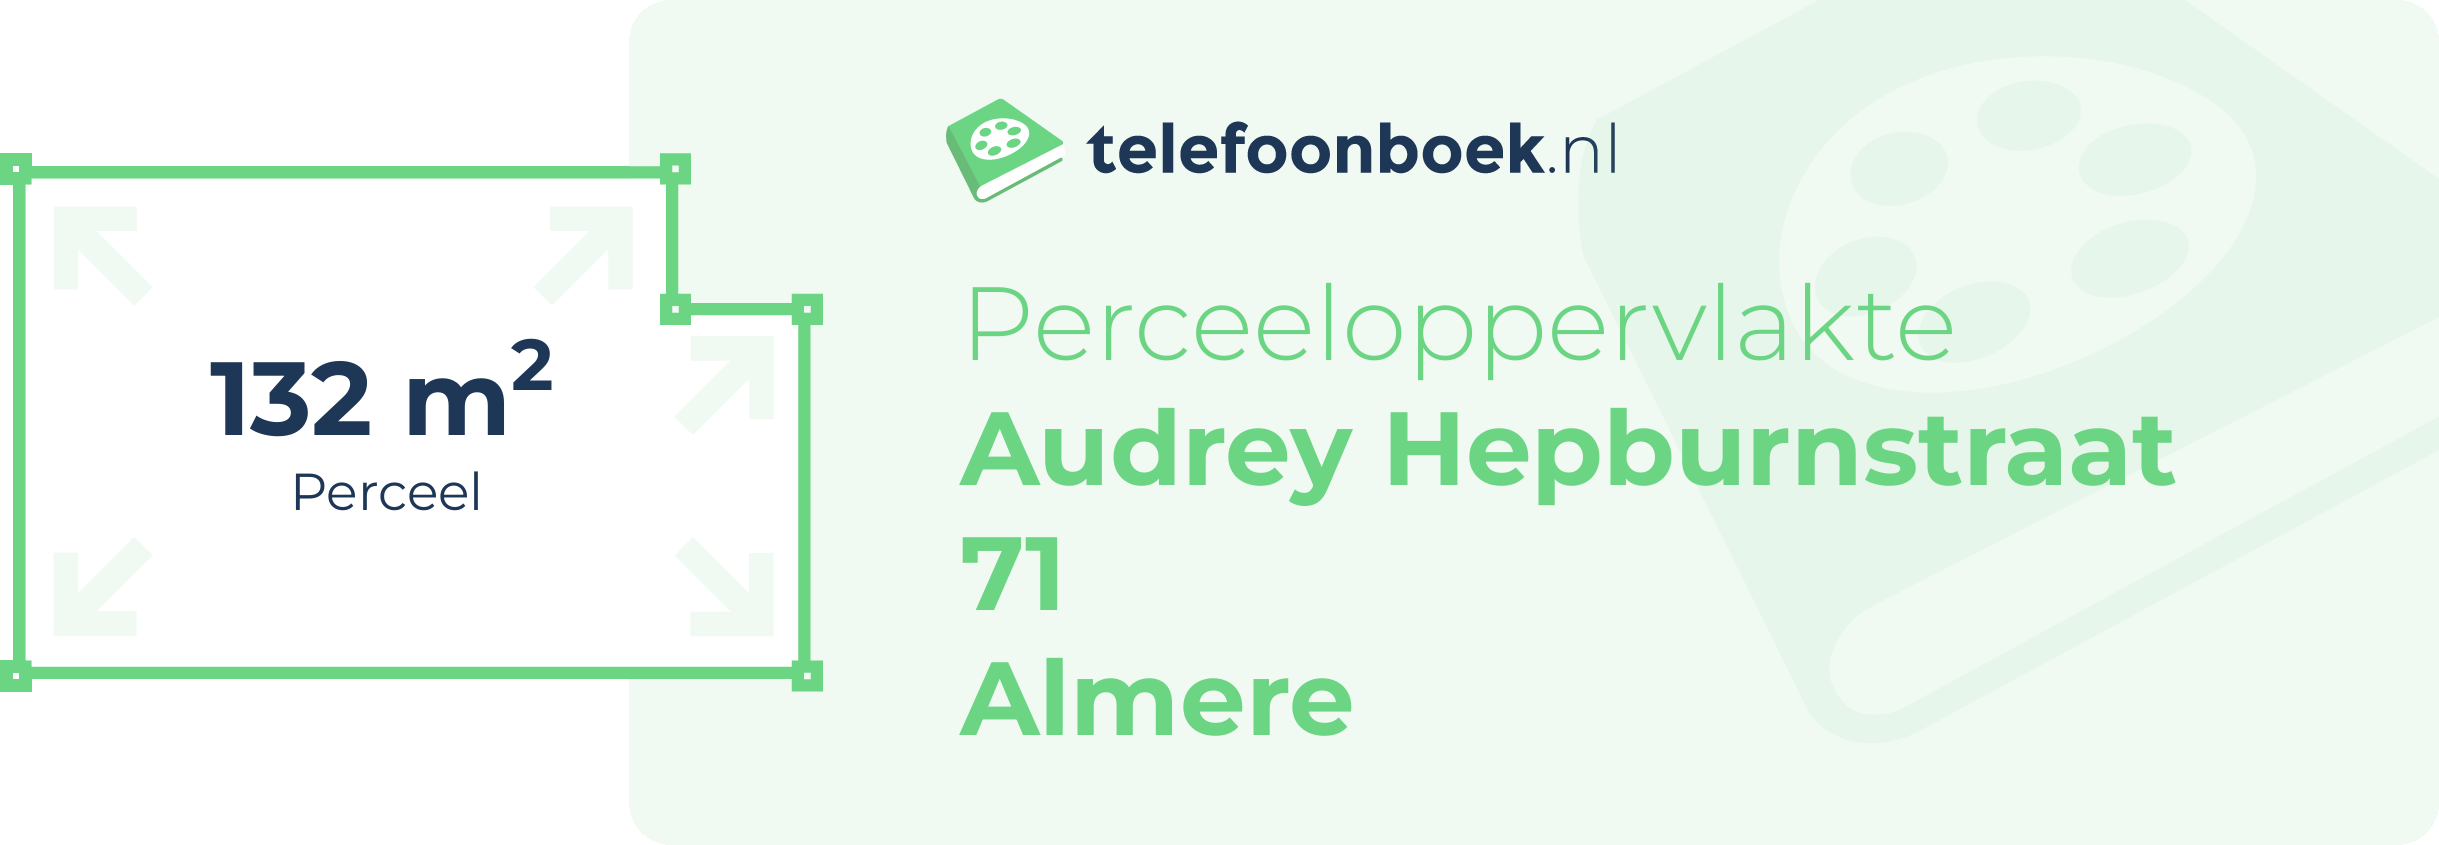 Perceeloppervlakte Audrey Hepburnstraat 71 Almere